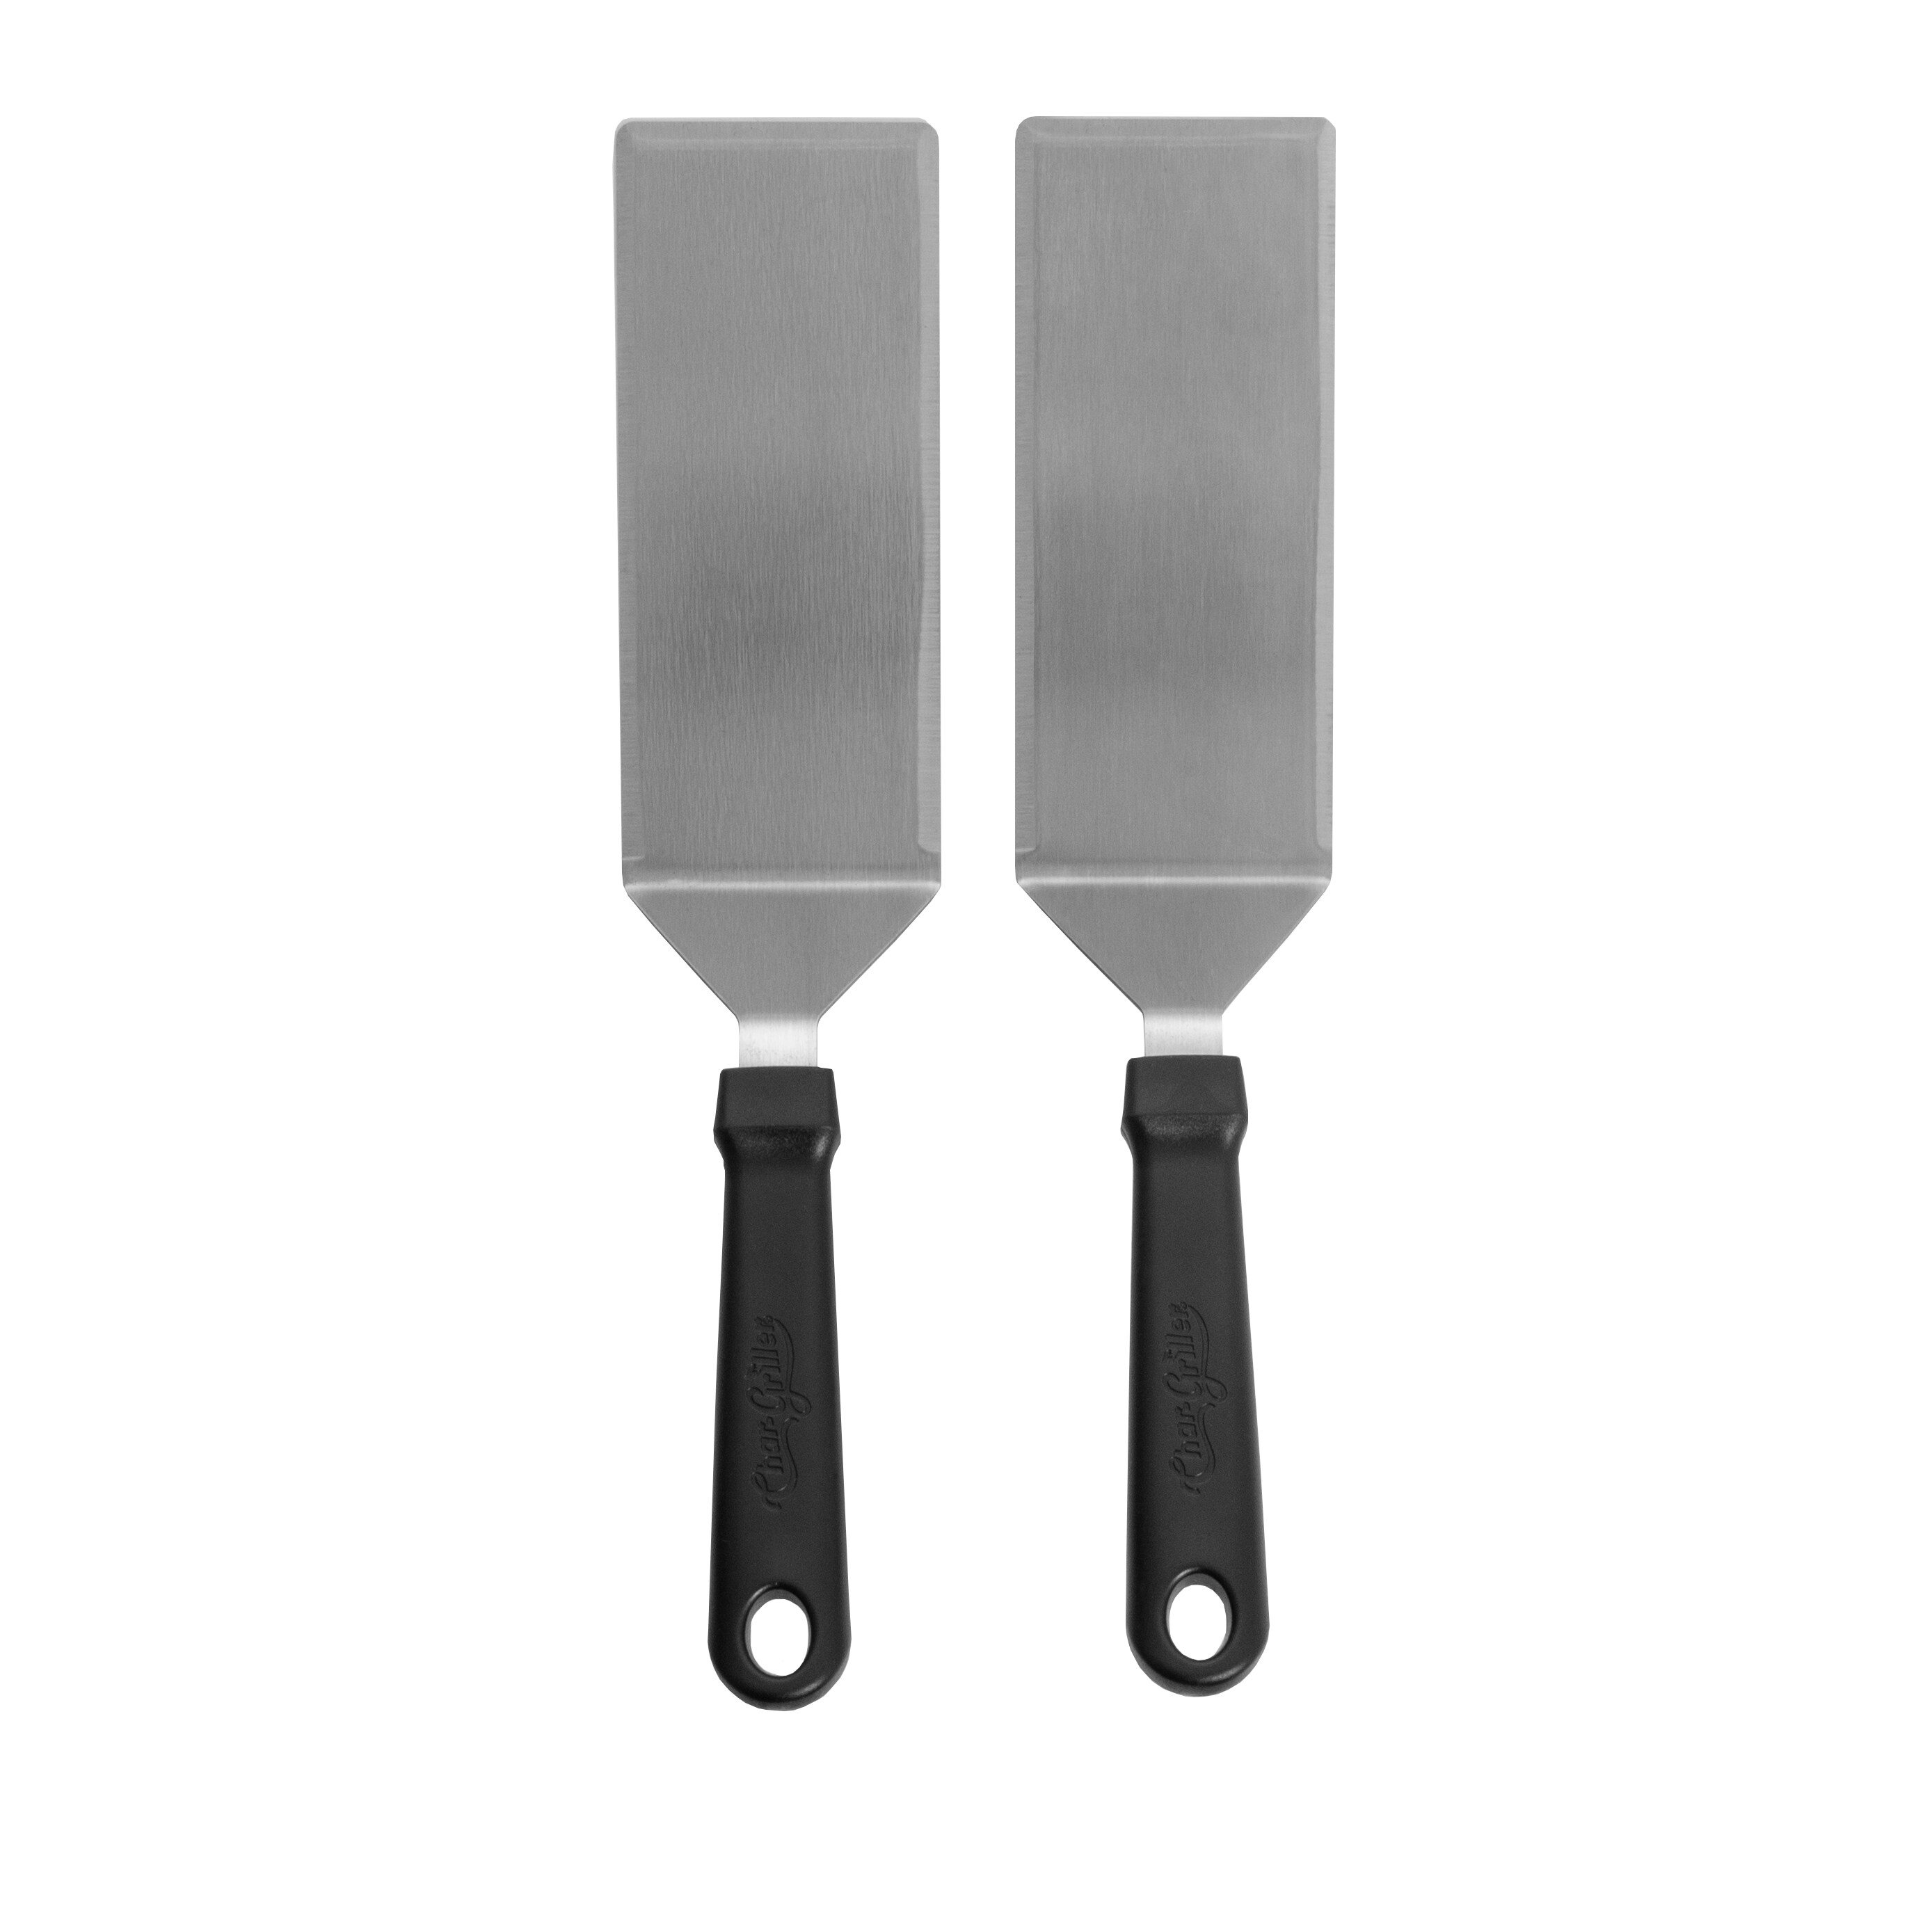 Tksrn Griddle Accessories Kit, 30 Pcs Flat Top Grill Tools Set for BBQ NEW